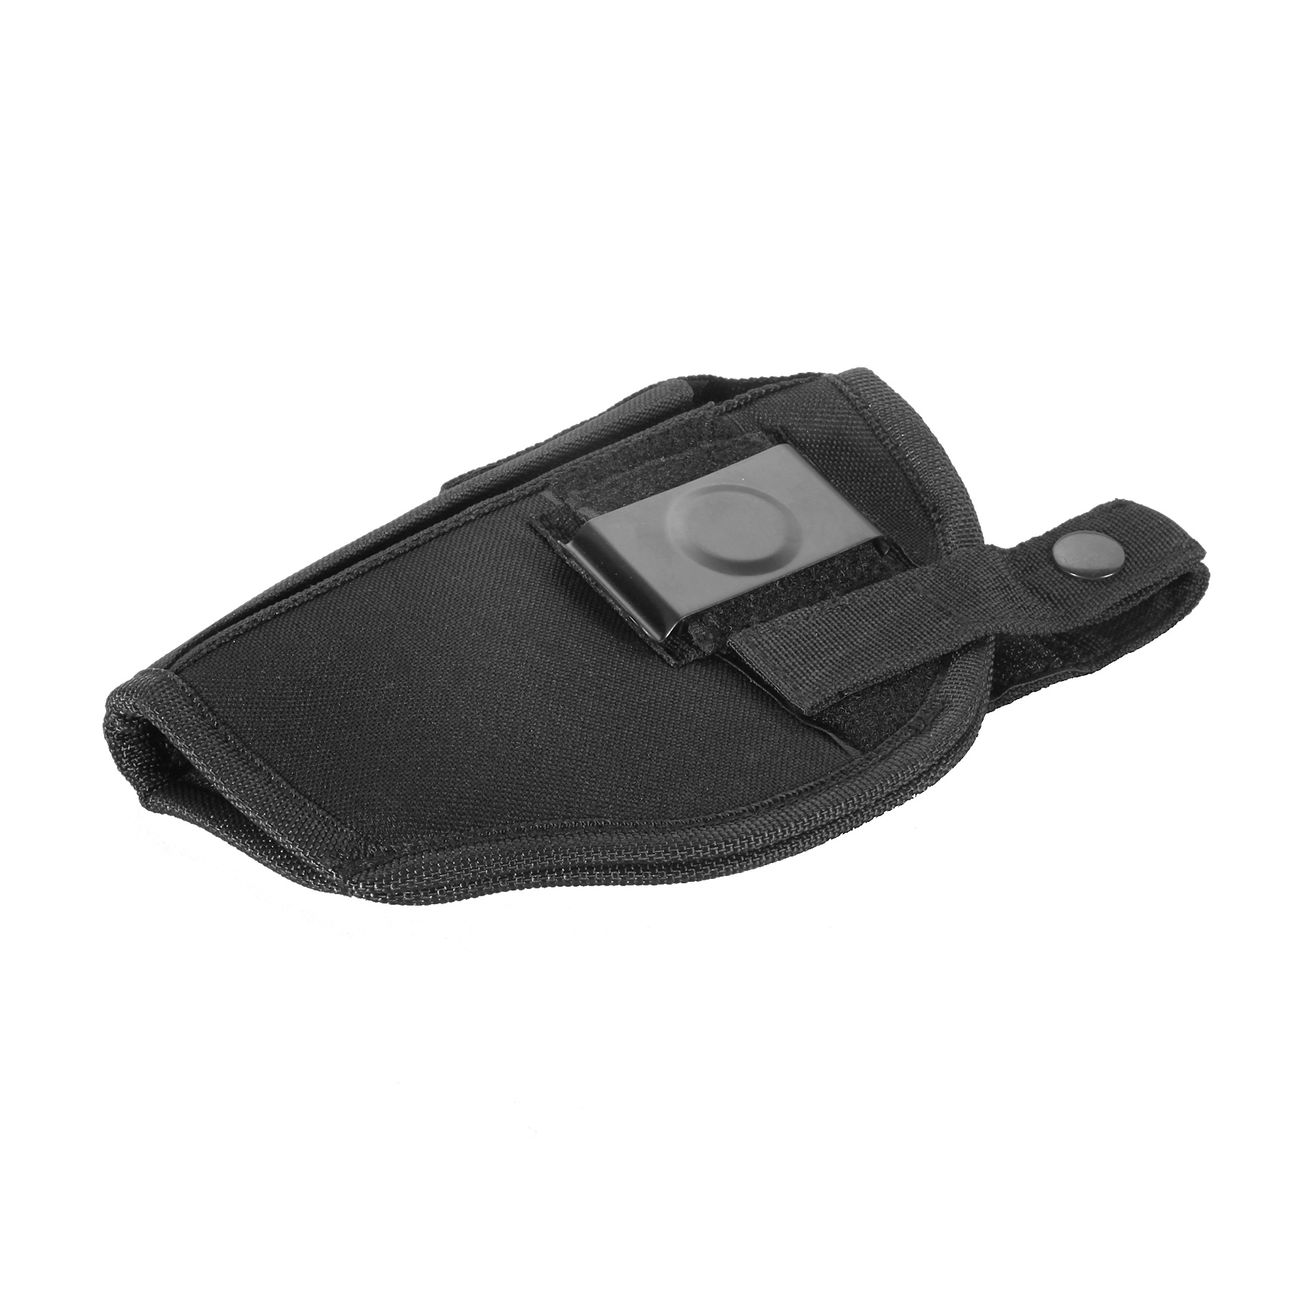 Fidragon Gürtelholster mit Metallclip beidhändig für mittlere bis große Pistolen schwarz Bild 1